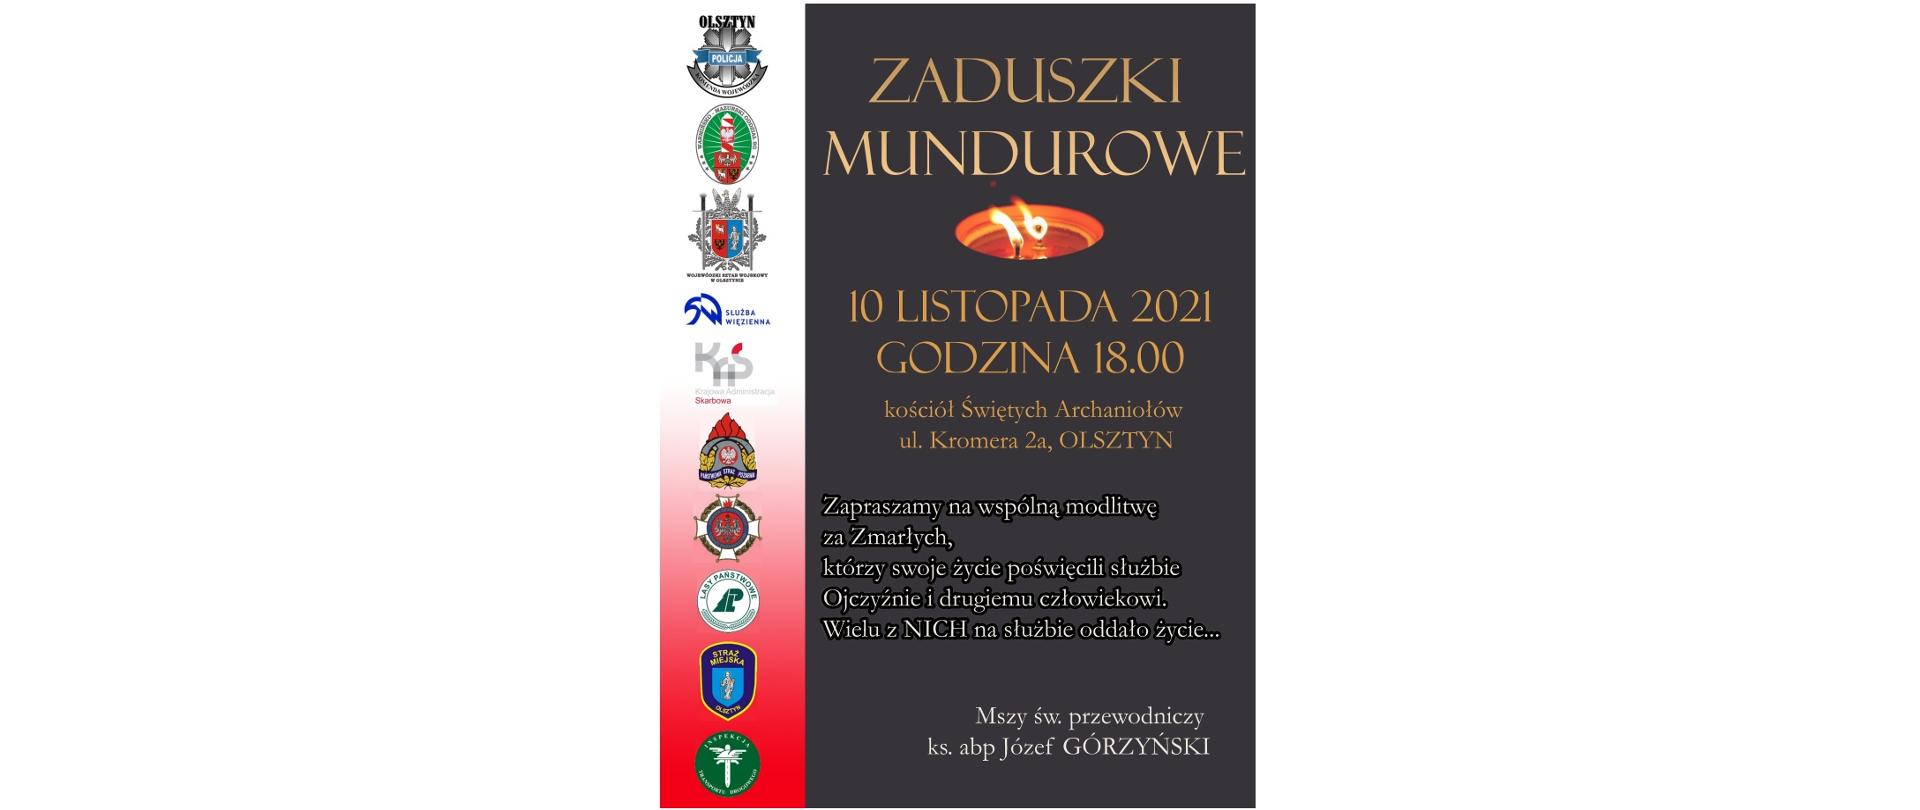 Zdjęcie przedstawia informację o organizowanych 10 listopada 2021 roku Zaduszkach Mundurowych w Olsztynie